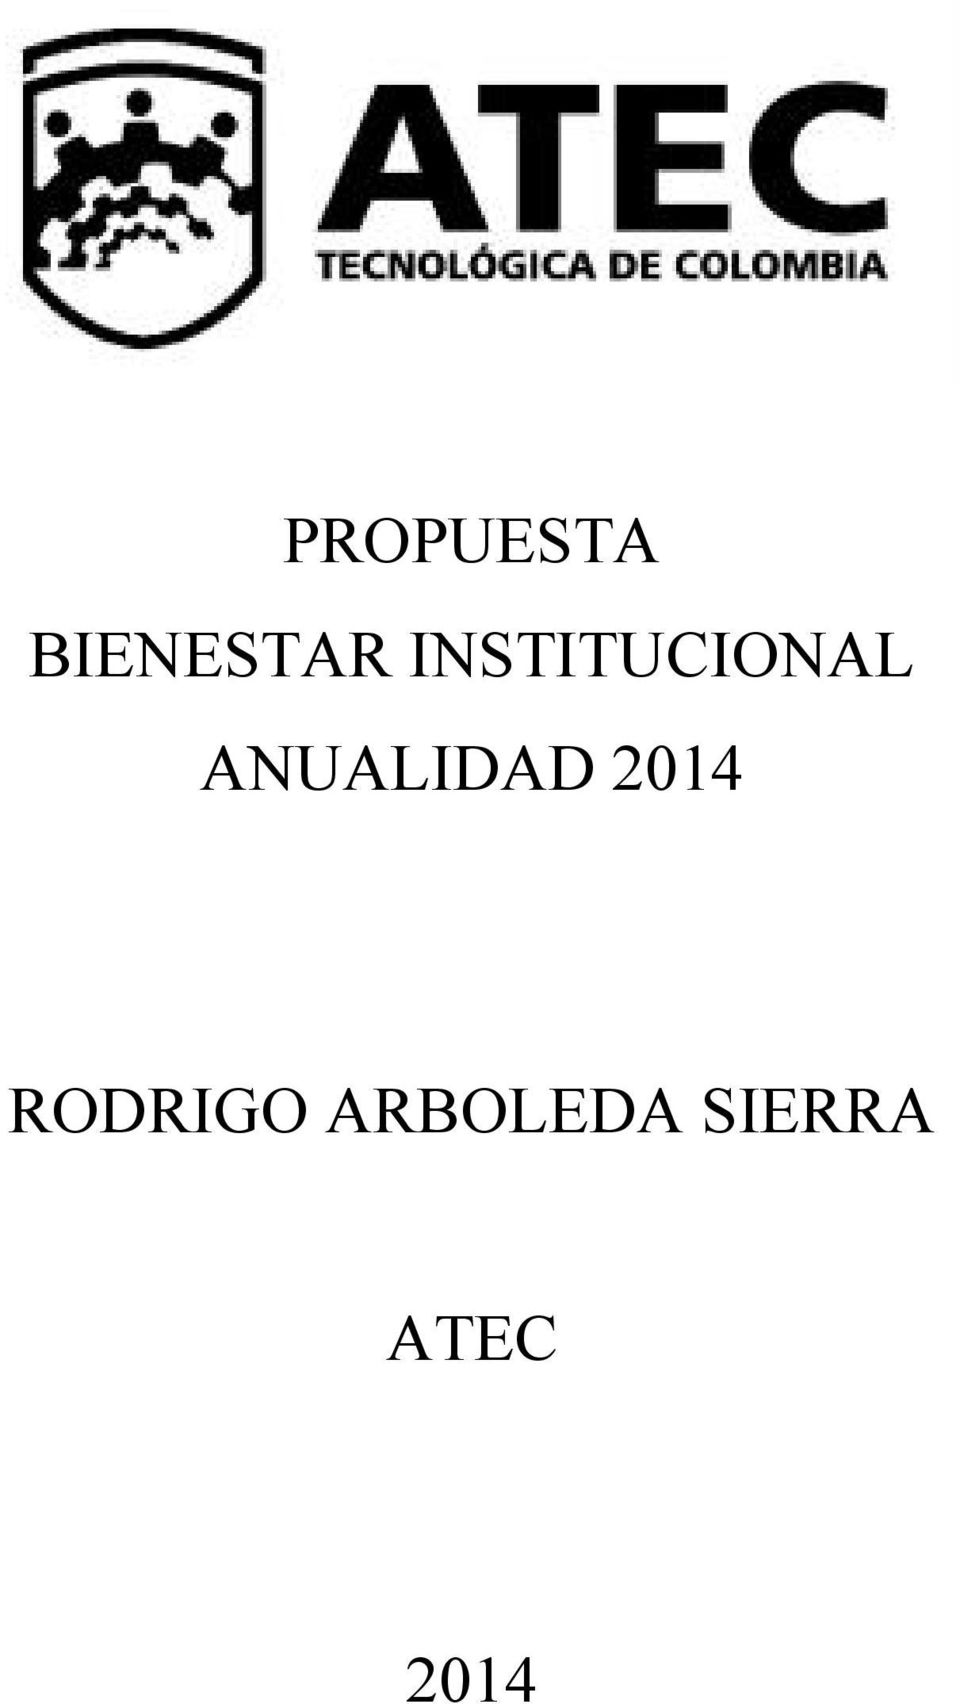 INSTITUCIONAL ANUALIDAD 2014